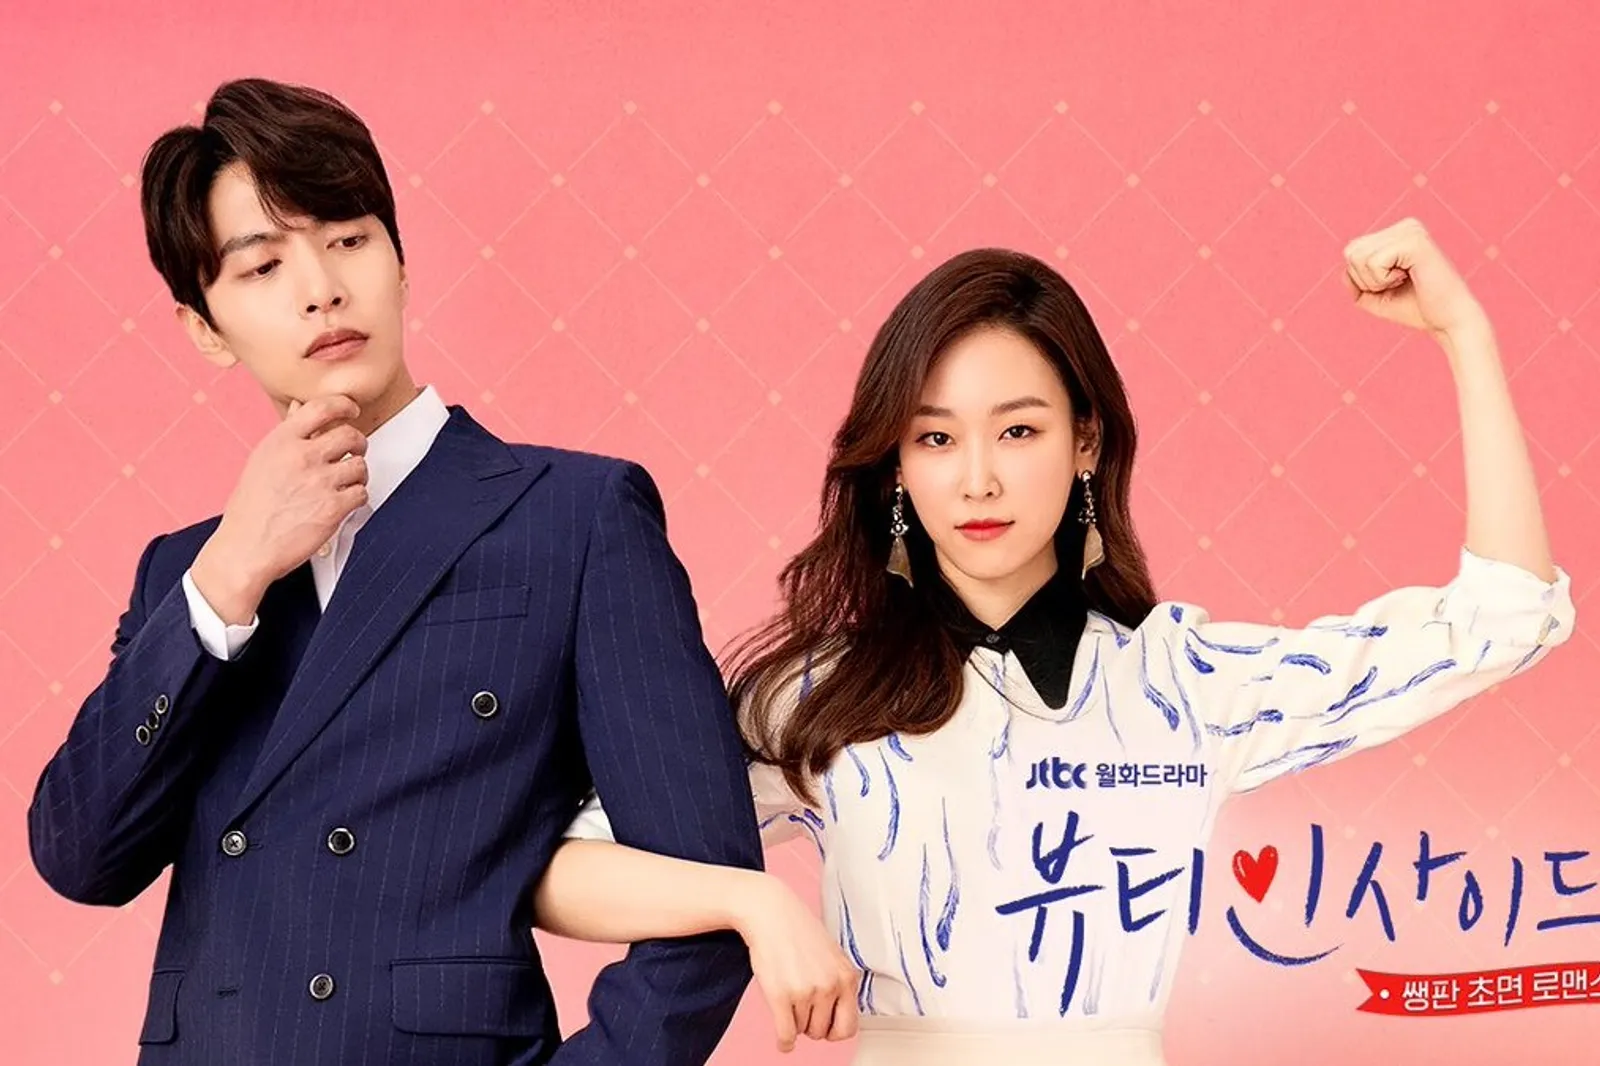 5 Film Komedi Romantis

Korea di GoPlay untuk Temani Akhir Pekan Kamu